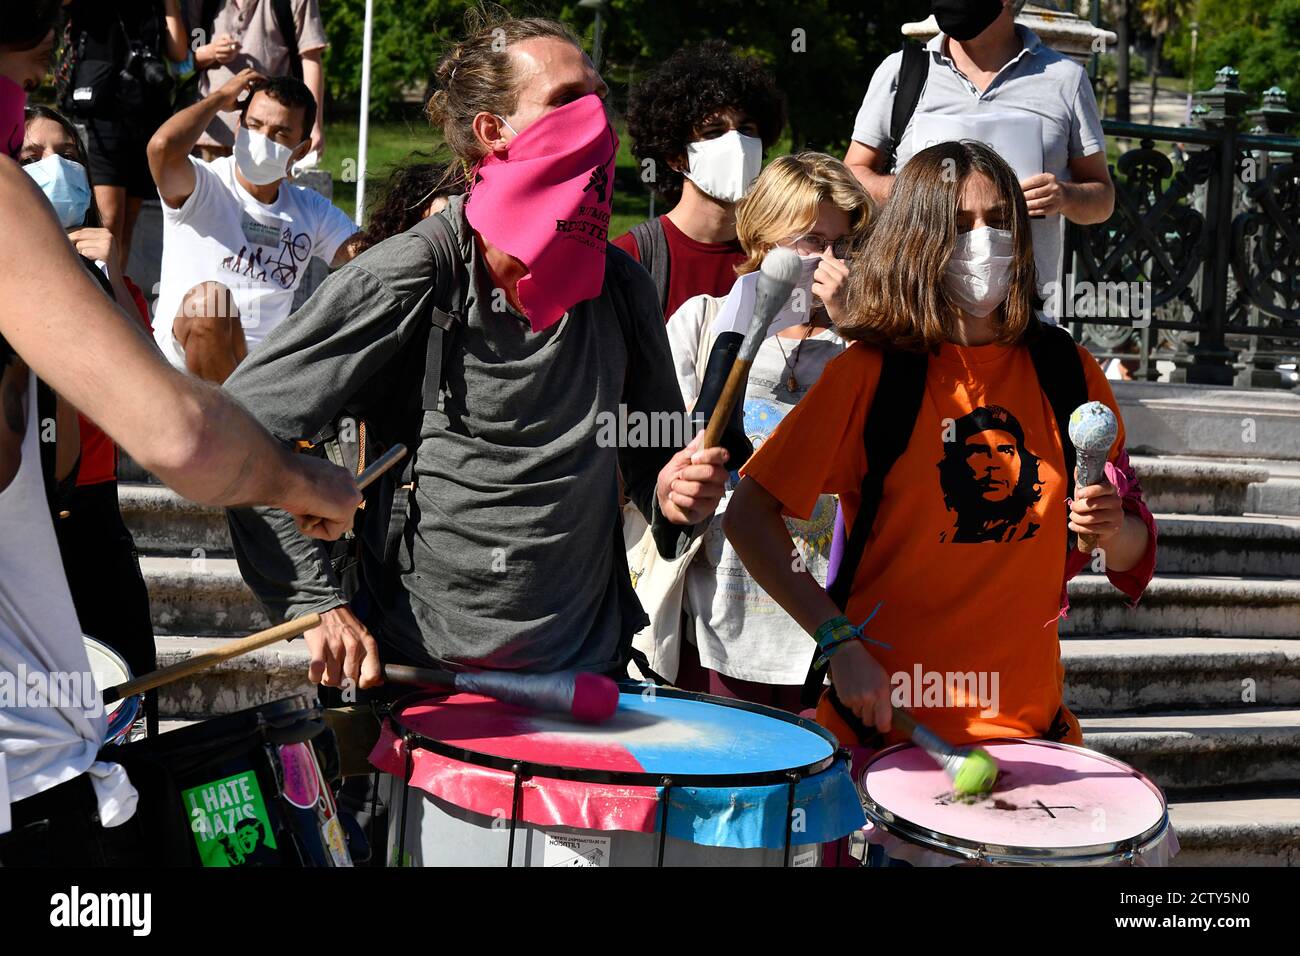 Varios manifestantes tocan instrumentos musicales durante el mitin.el  movimiento Viernes para el futuro, dirigido por el activista Greta  Thunberg, ha convocado varias marchas y manifestaciones a favor del medio  ambiente y en